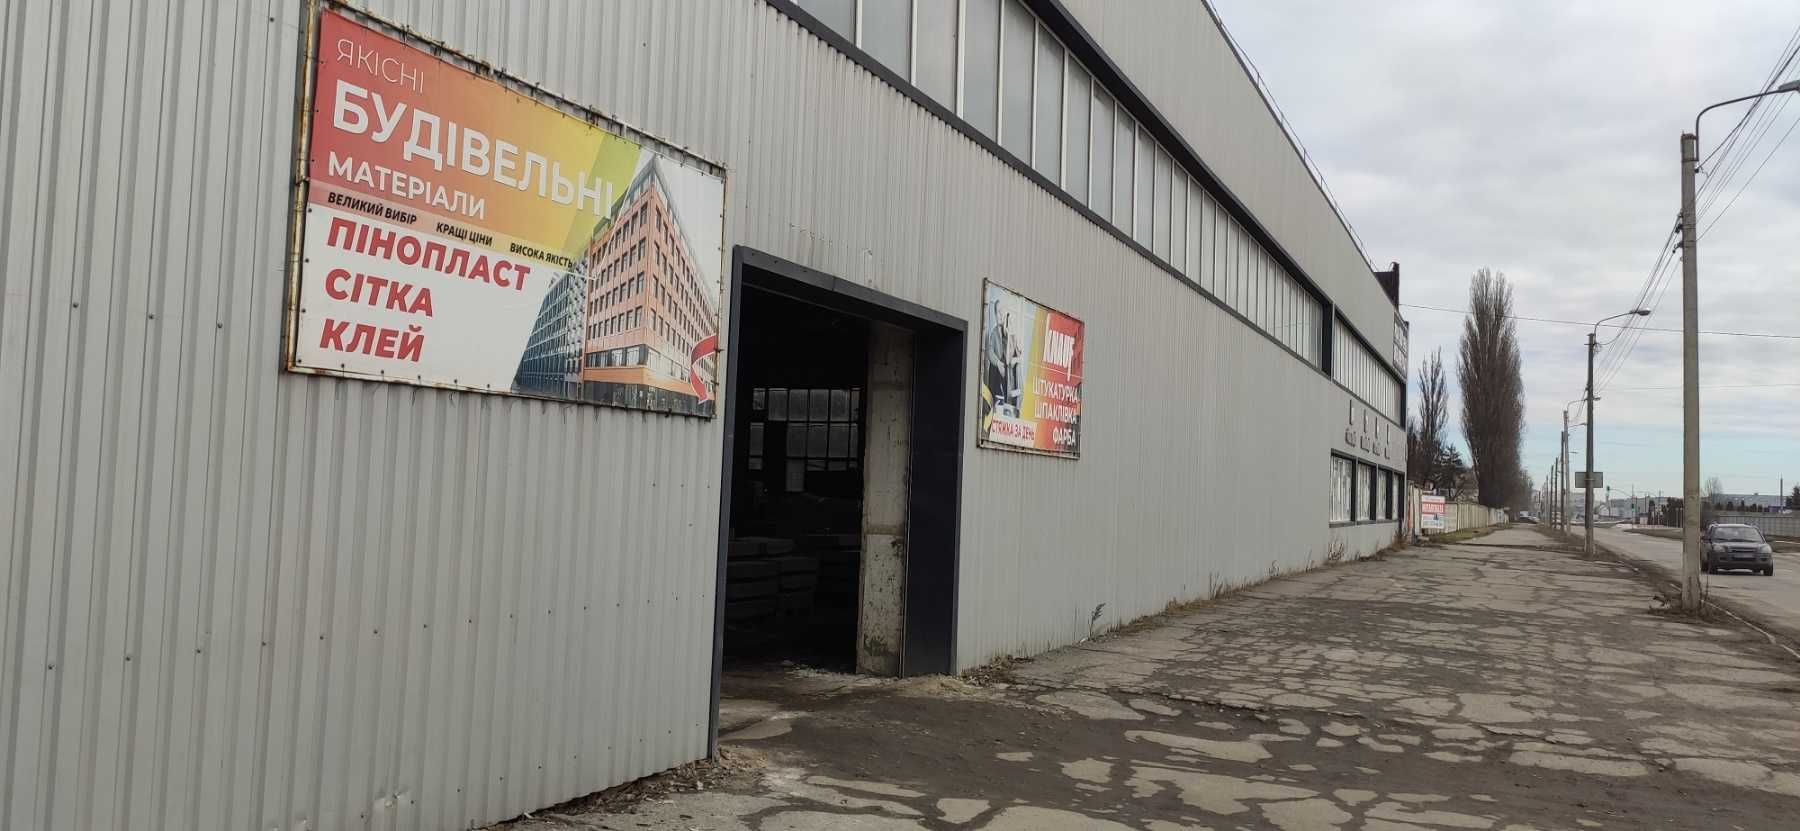 Продажа фасадного помещения под склад или производство, г. Хмельницкий